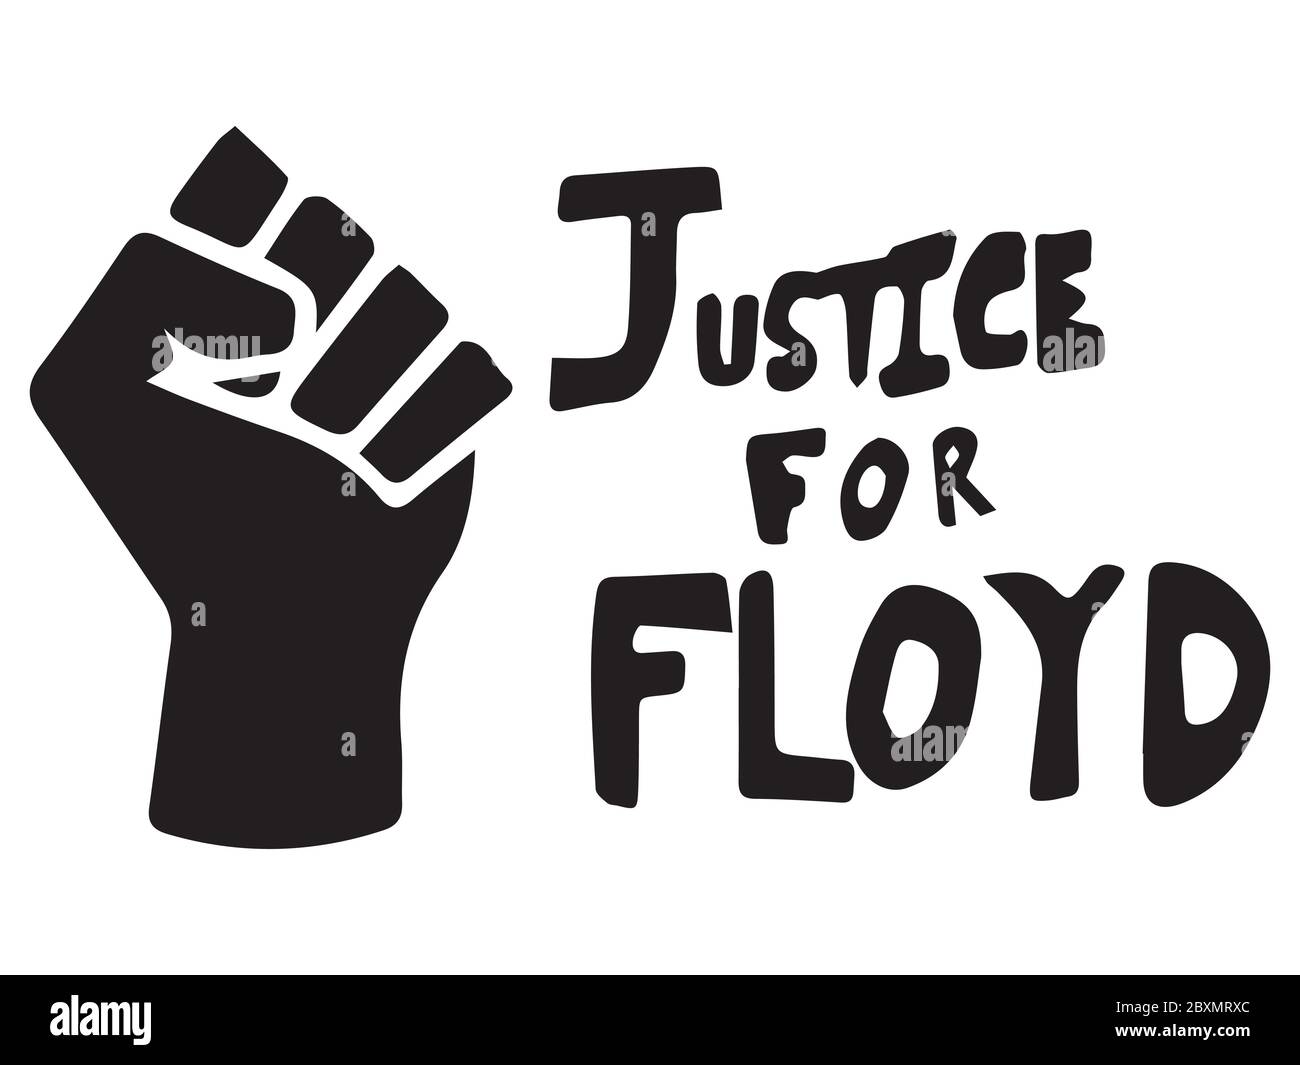 Gerechtigkeit für Floyd mit Faust. Piktogramm Illustration Darstellung Gerechtigkeit für Floyd Text mit BLM-Logo Faust. Schwarz-weiße EPS-Vektordatei. Stock Vektor